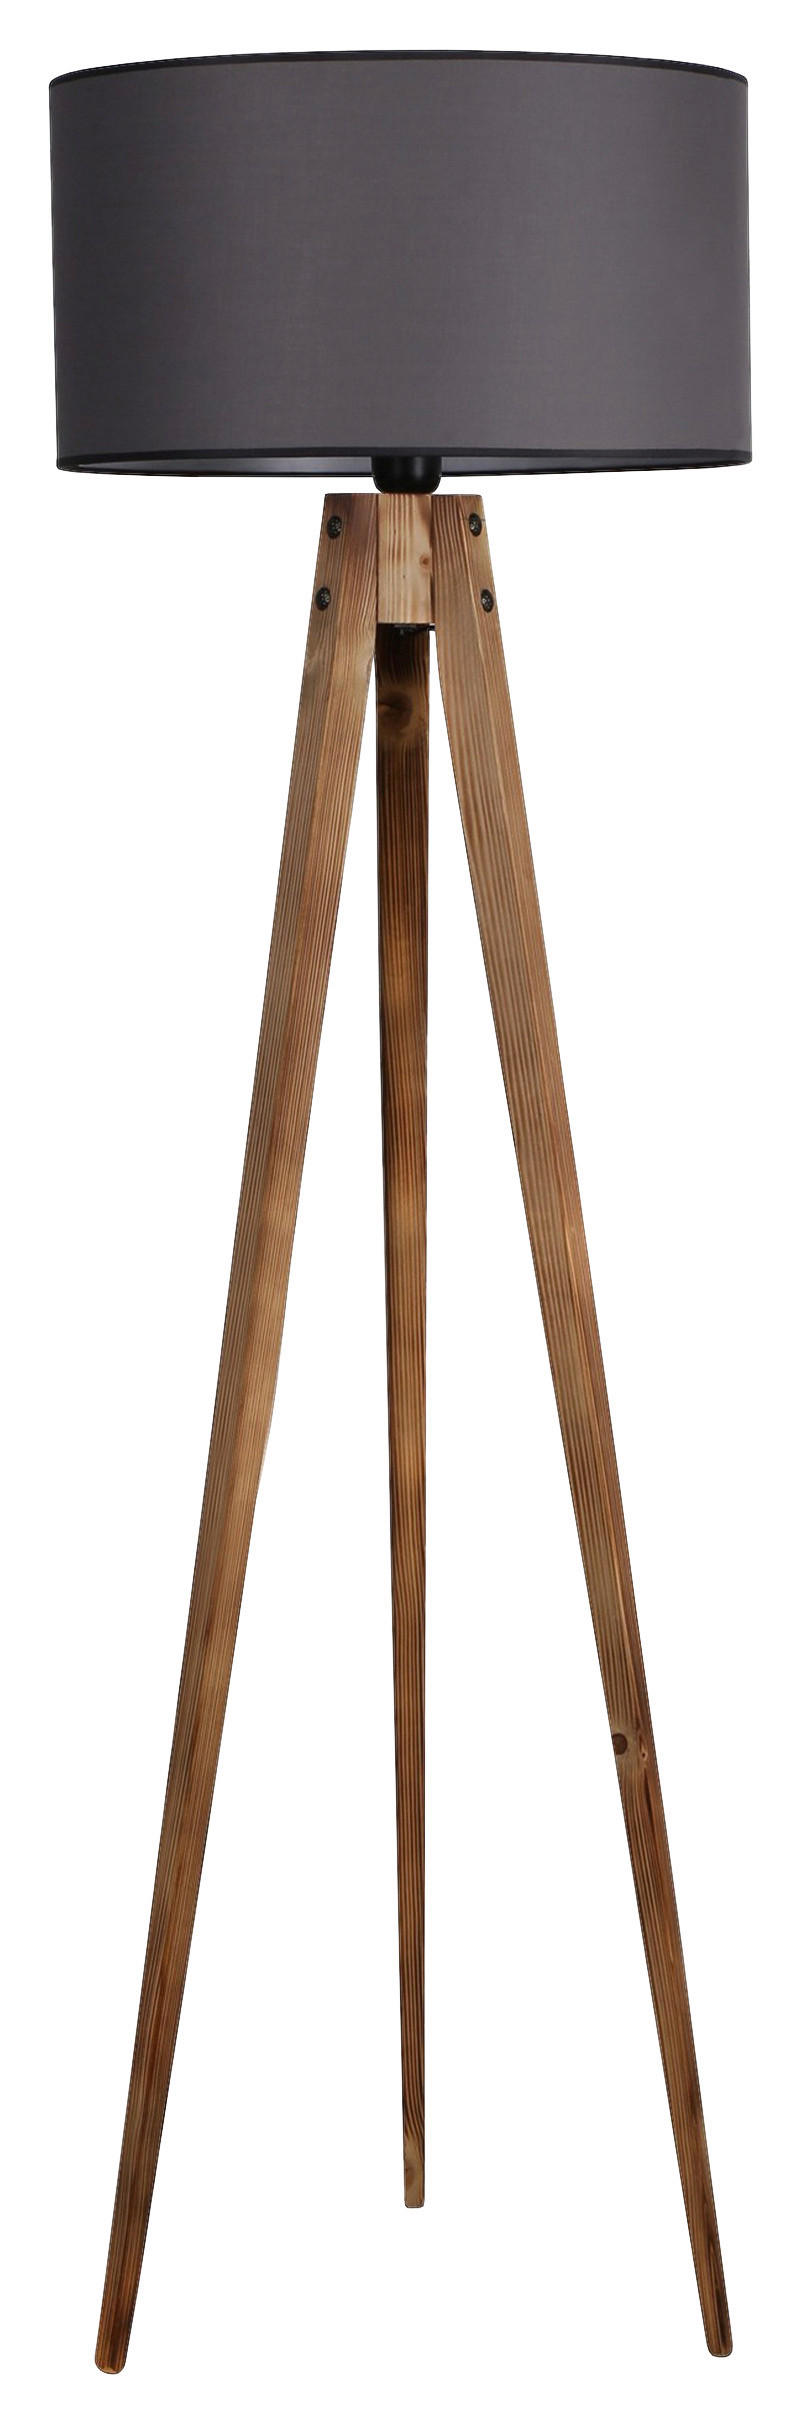 STEHLEUCHTE  153/50/50 cm   - Braun/Grau, Trend, Holz/Textil (153/50/50cm)